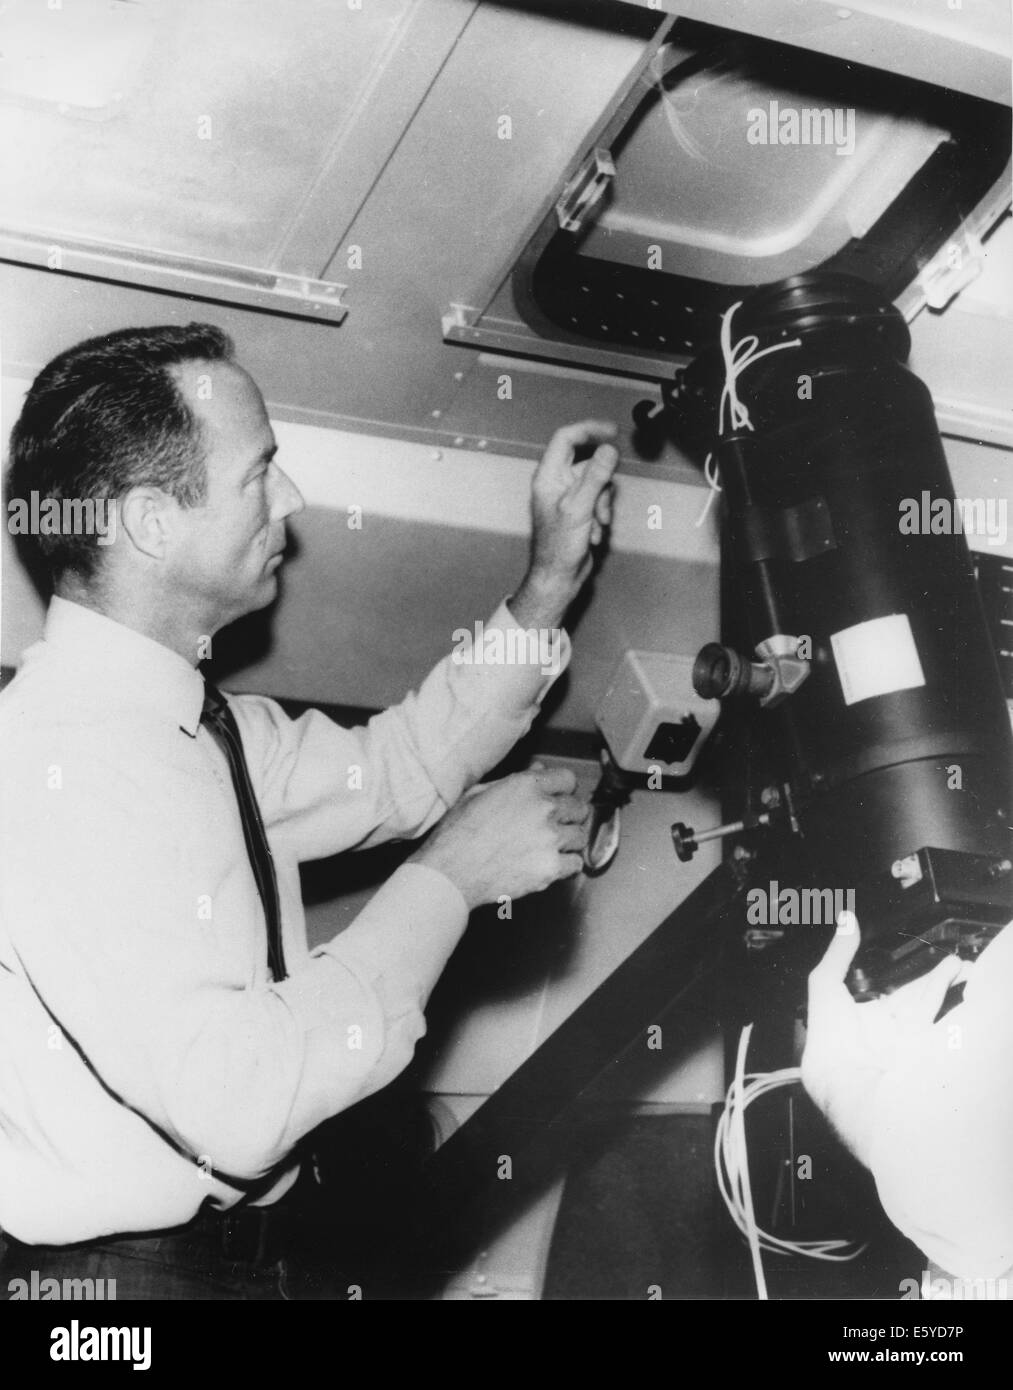 L'astronaute de la NASA Scott Carpenter l'inspection de l'équipement dans l'avance de son voyage pour voir couronne solaire pendant une éclipse totale, 1965 Banque D'Images